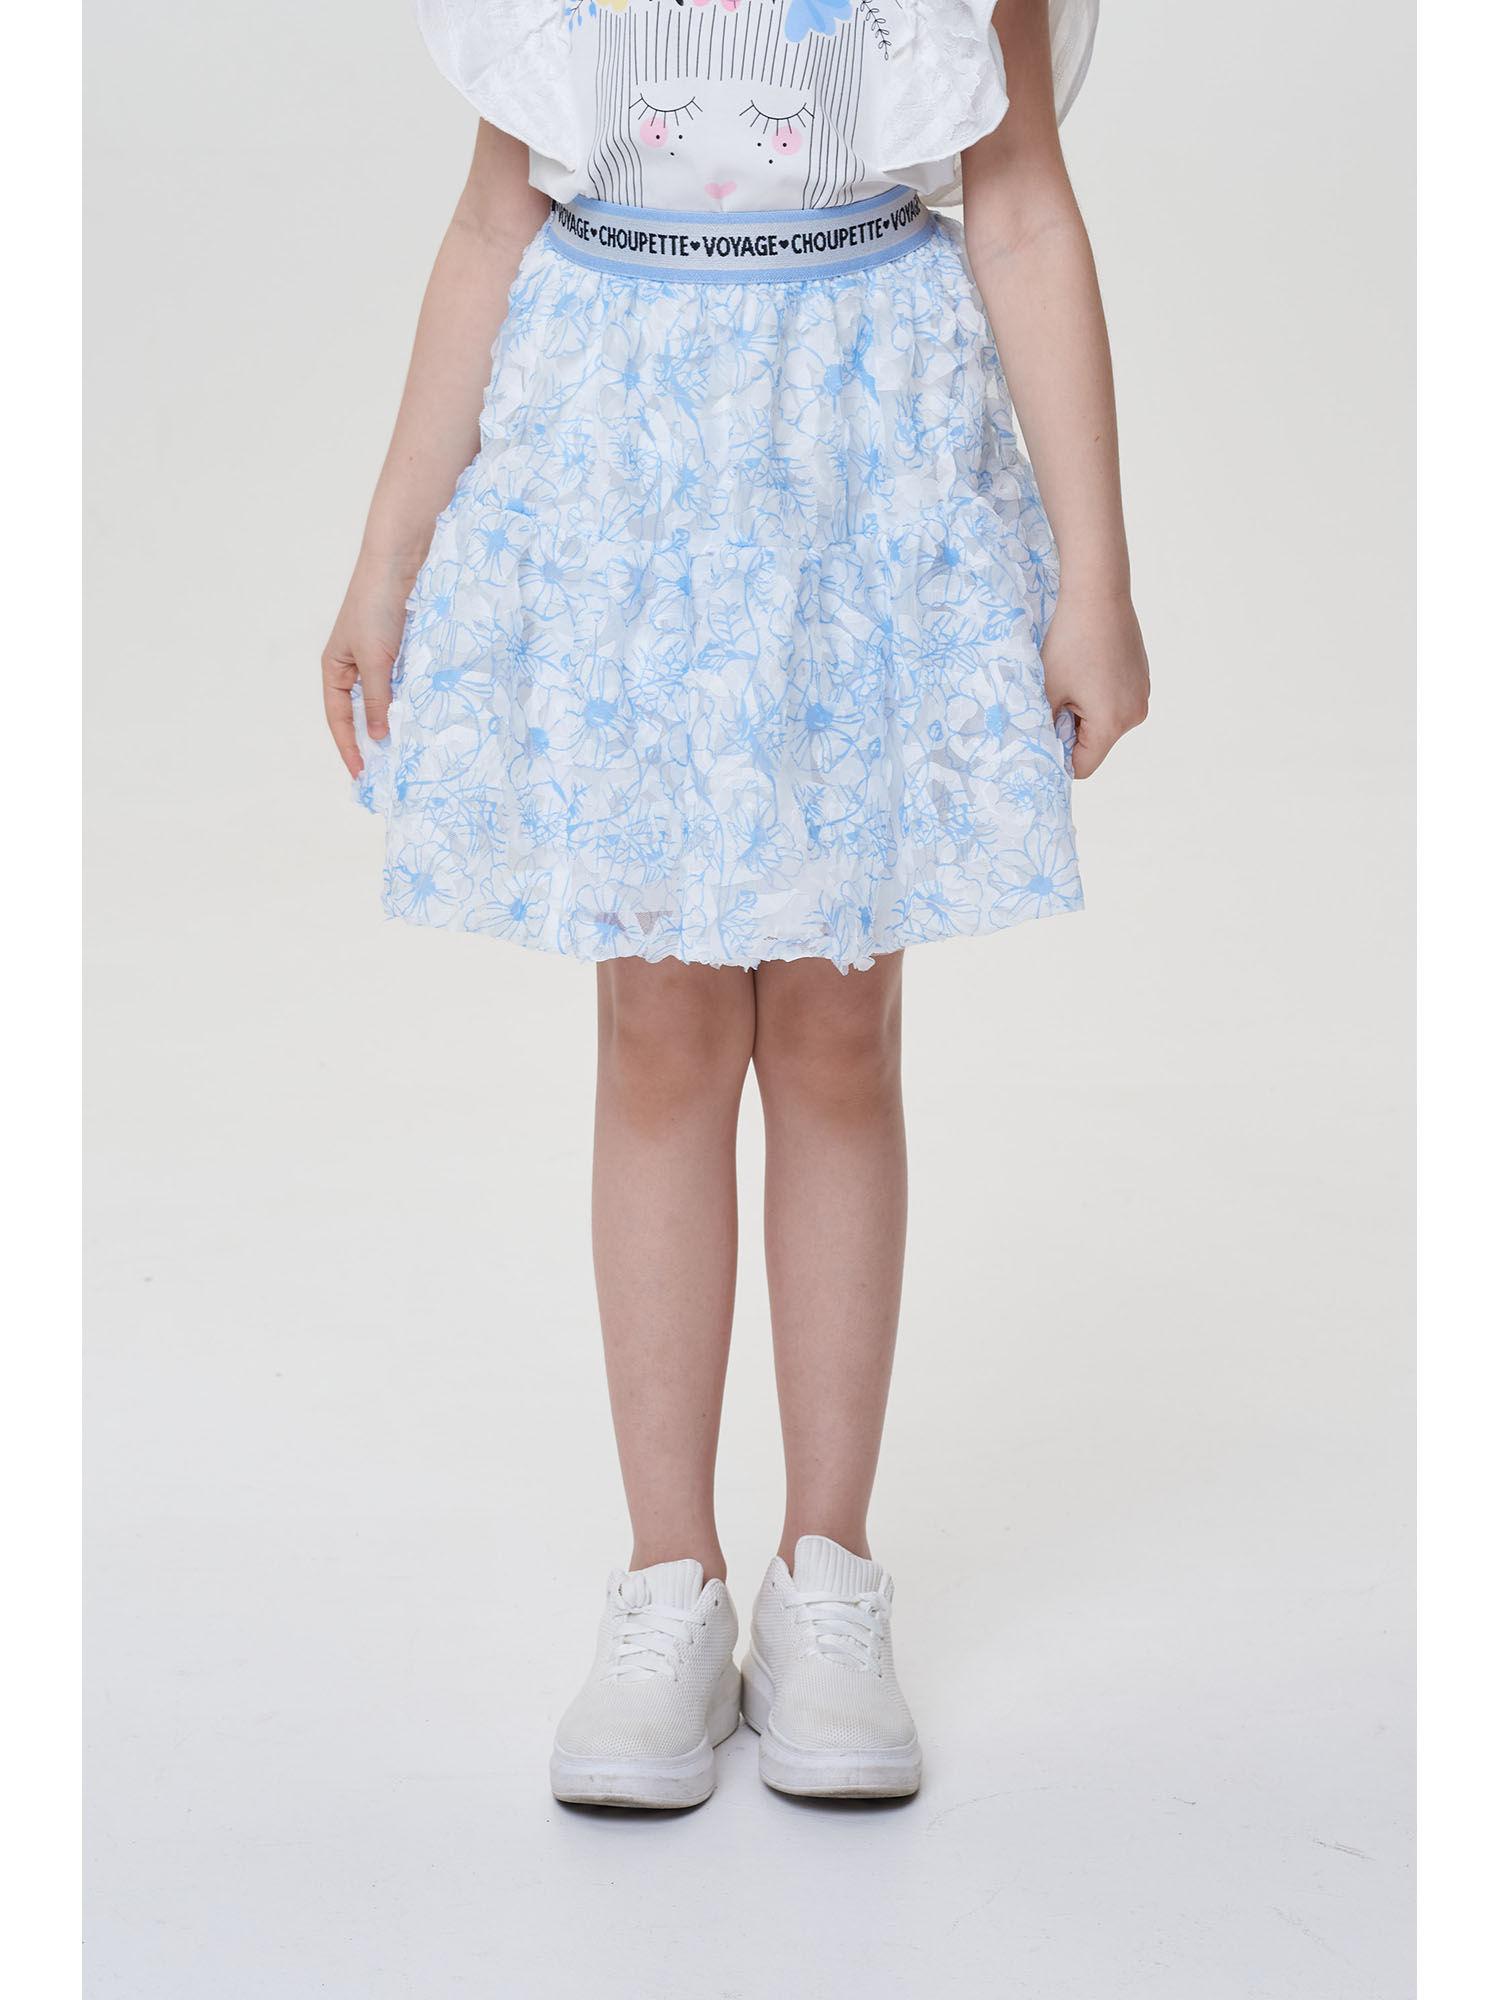 girls blue skirt